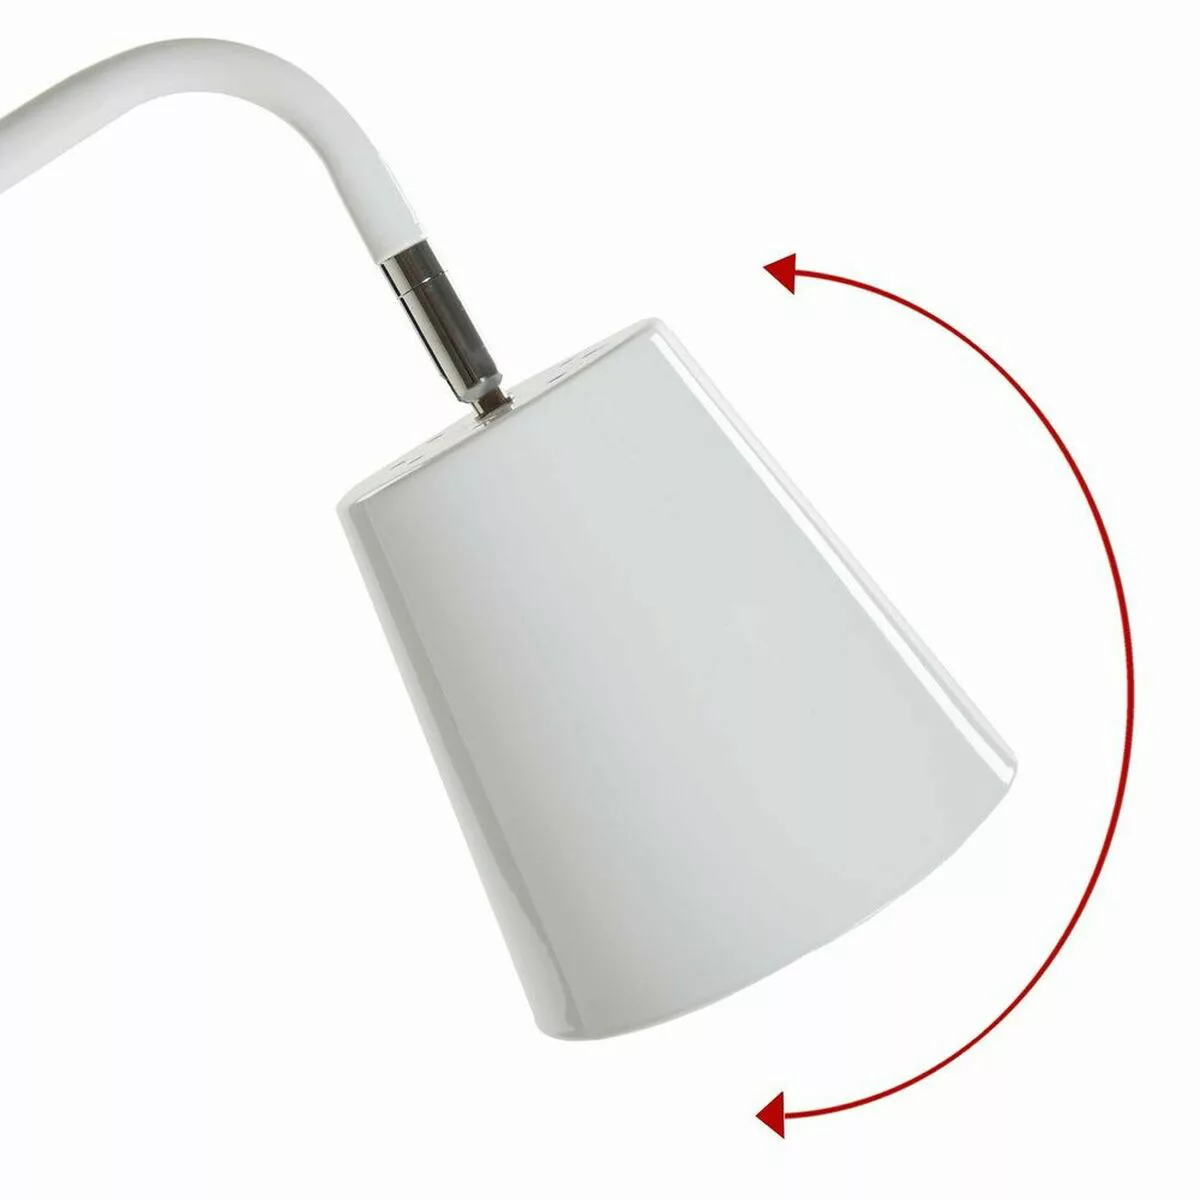 Stehlampe Versa (26 X 28,7 X 138,5 Cm) günstig online kaufen